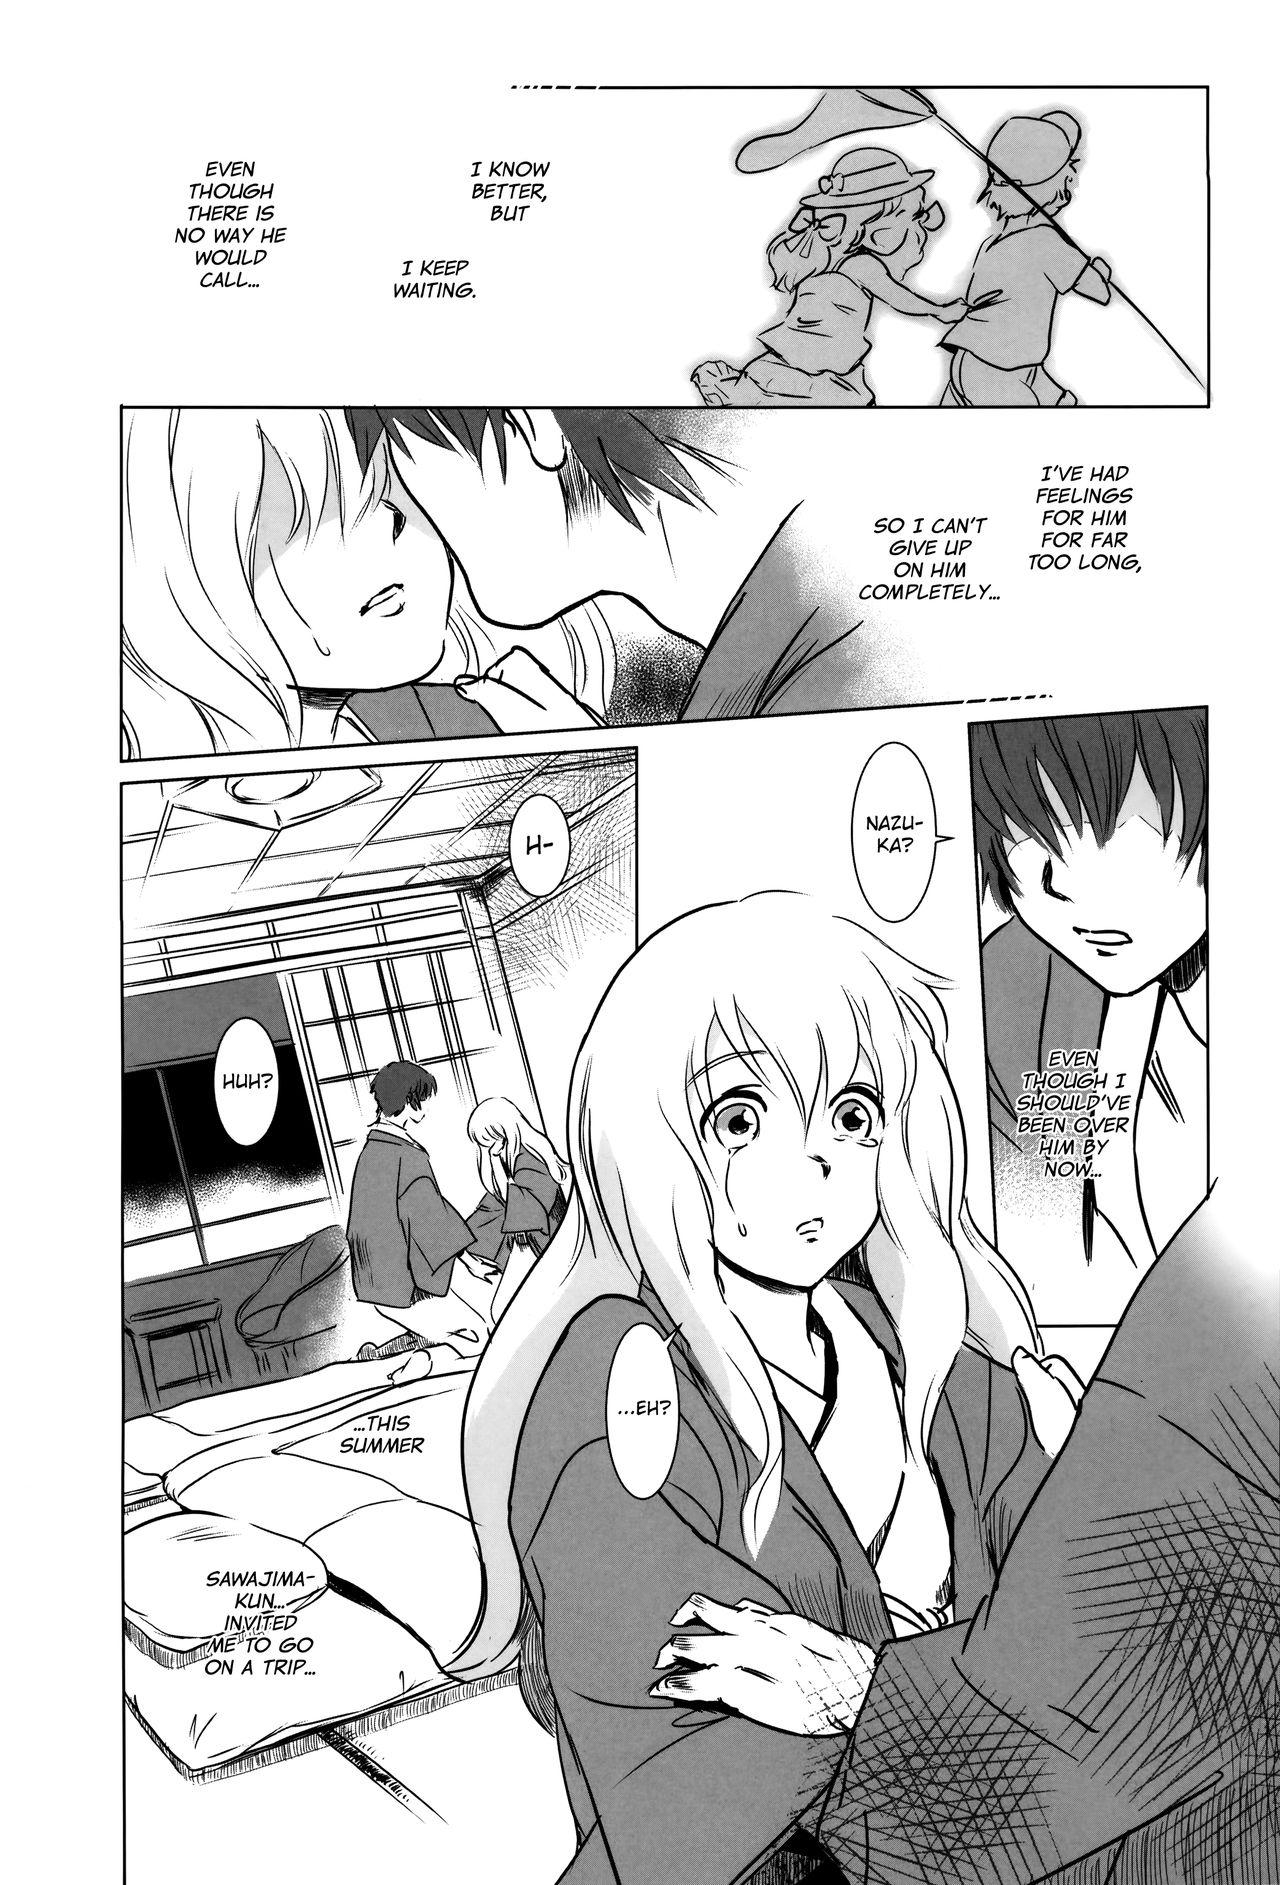 Amigo Story of the 'N' Situation - Situation#2 Kokoro Utsuri Grandmother - Page 3